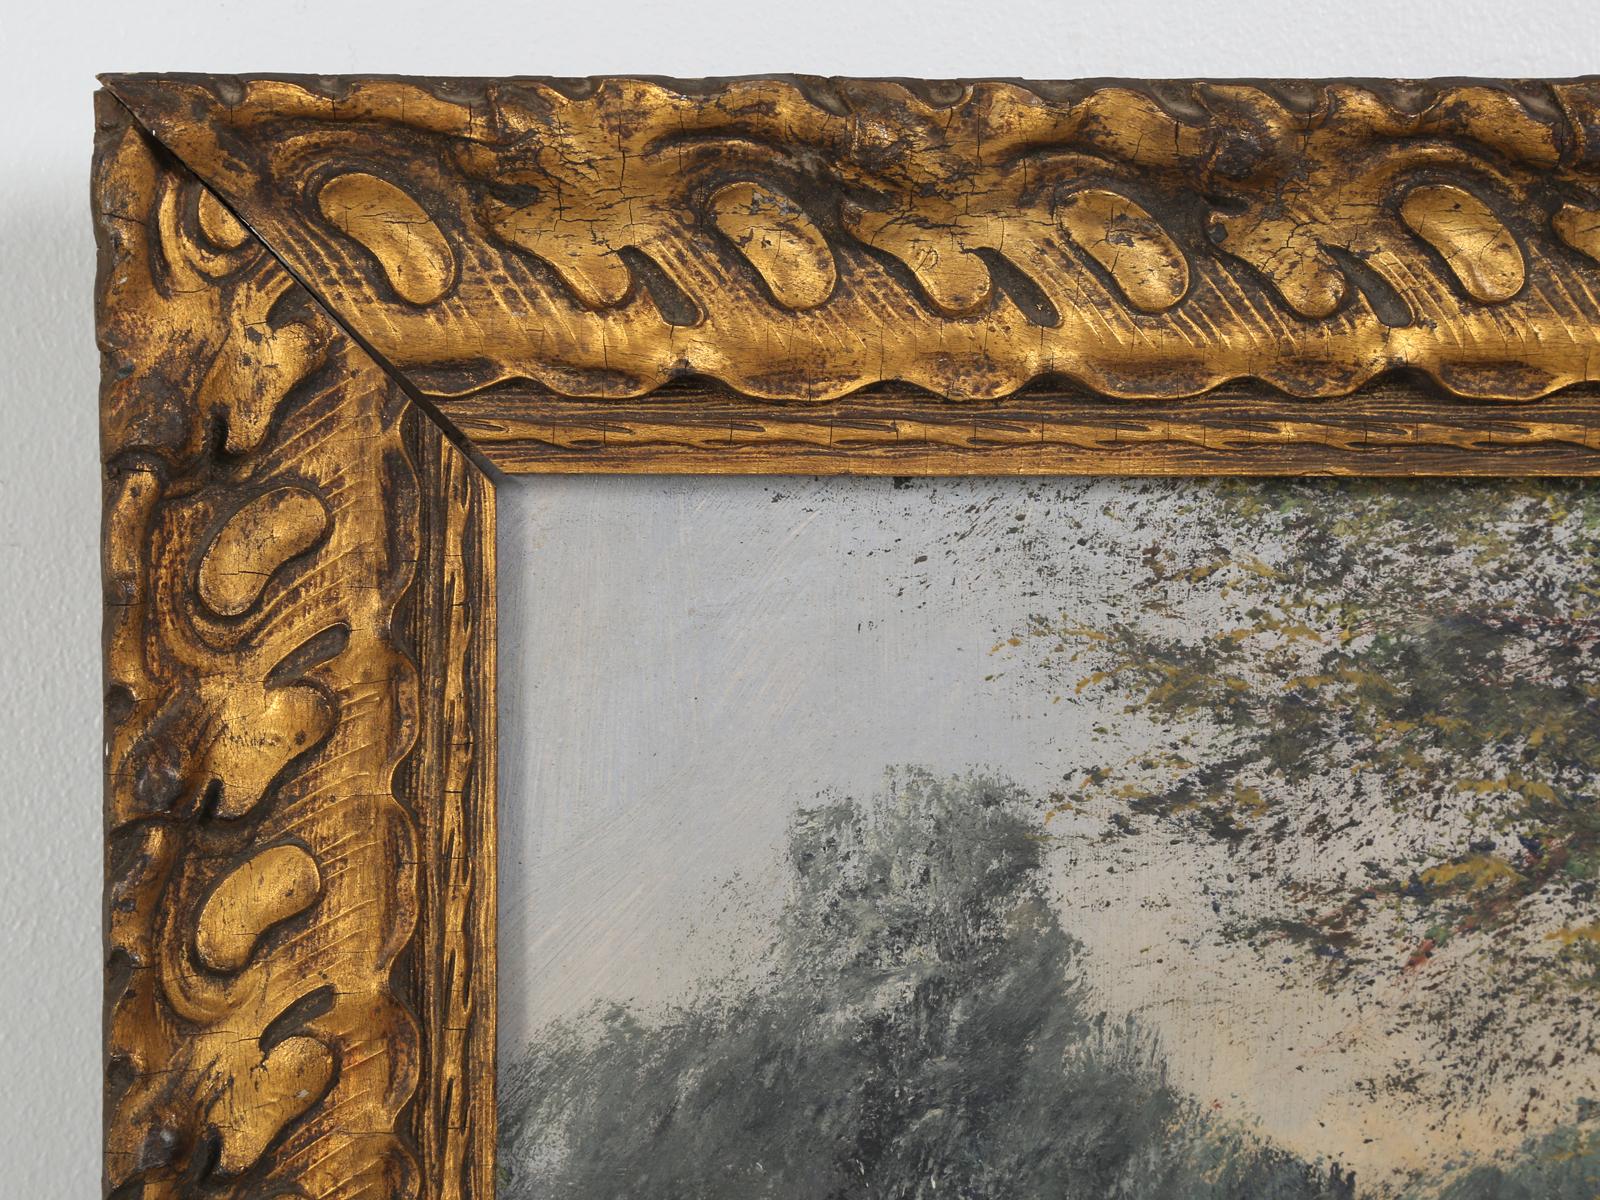 Antike Französisch Landschaft Ölgemälde, auf Leinen, signiert Baldy, in dem, was zu sein scheint seine ursprüngliche vergoldeten Rahmen. Wahrscheinlich Anfang 1900 gemalt, zeigt es eine Person auf einer einsamen Landstraße. Schöner handgeschnitzter